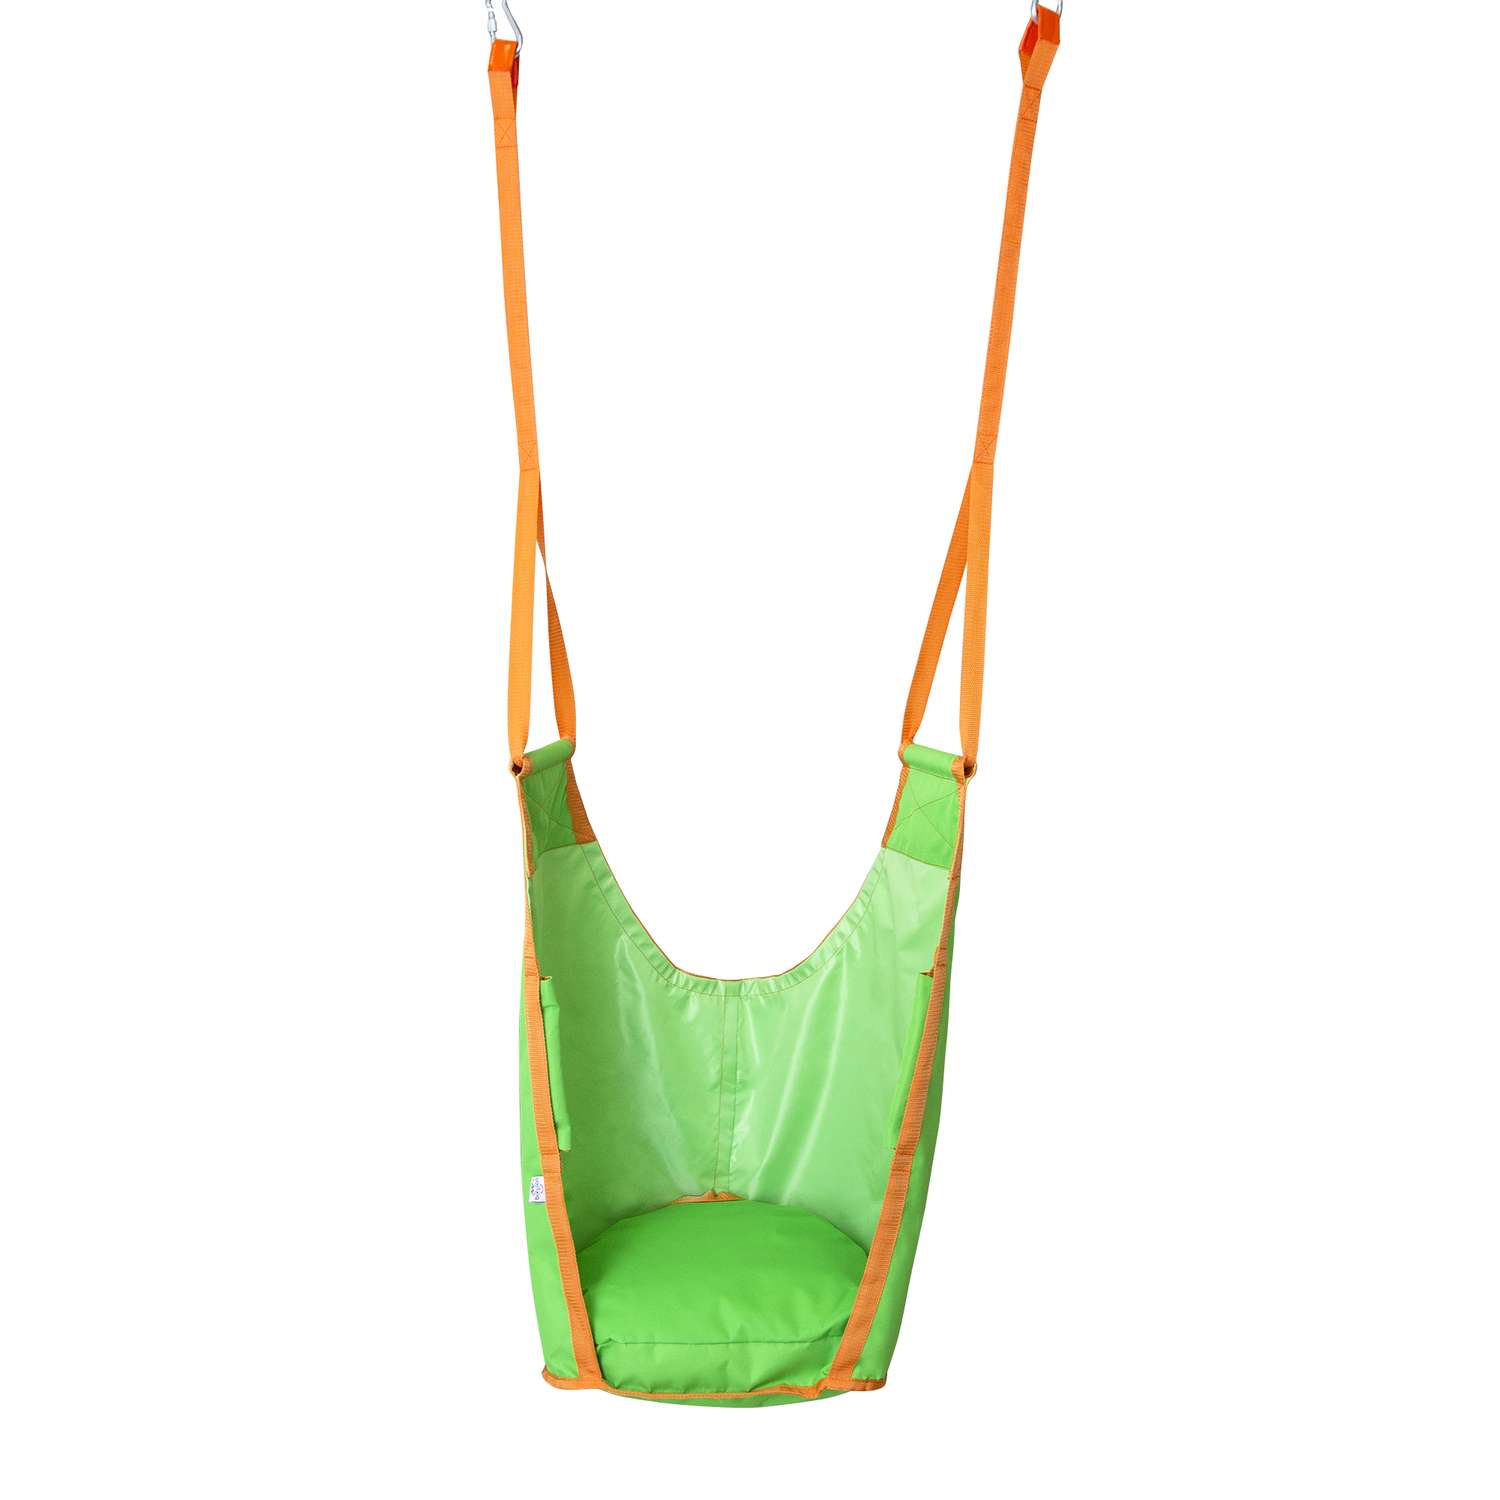 Подвесные качели-кресло Belon familia цвет салатовый и оранжевый - фото 1